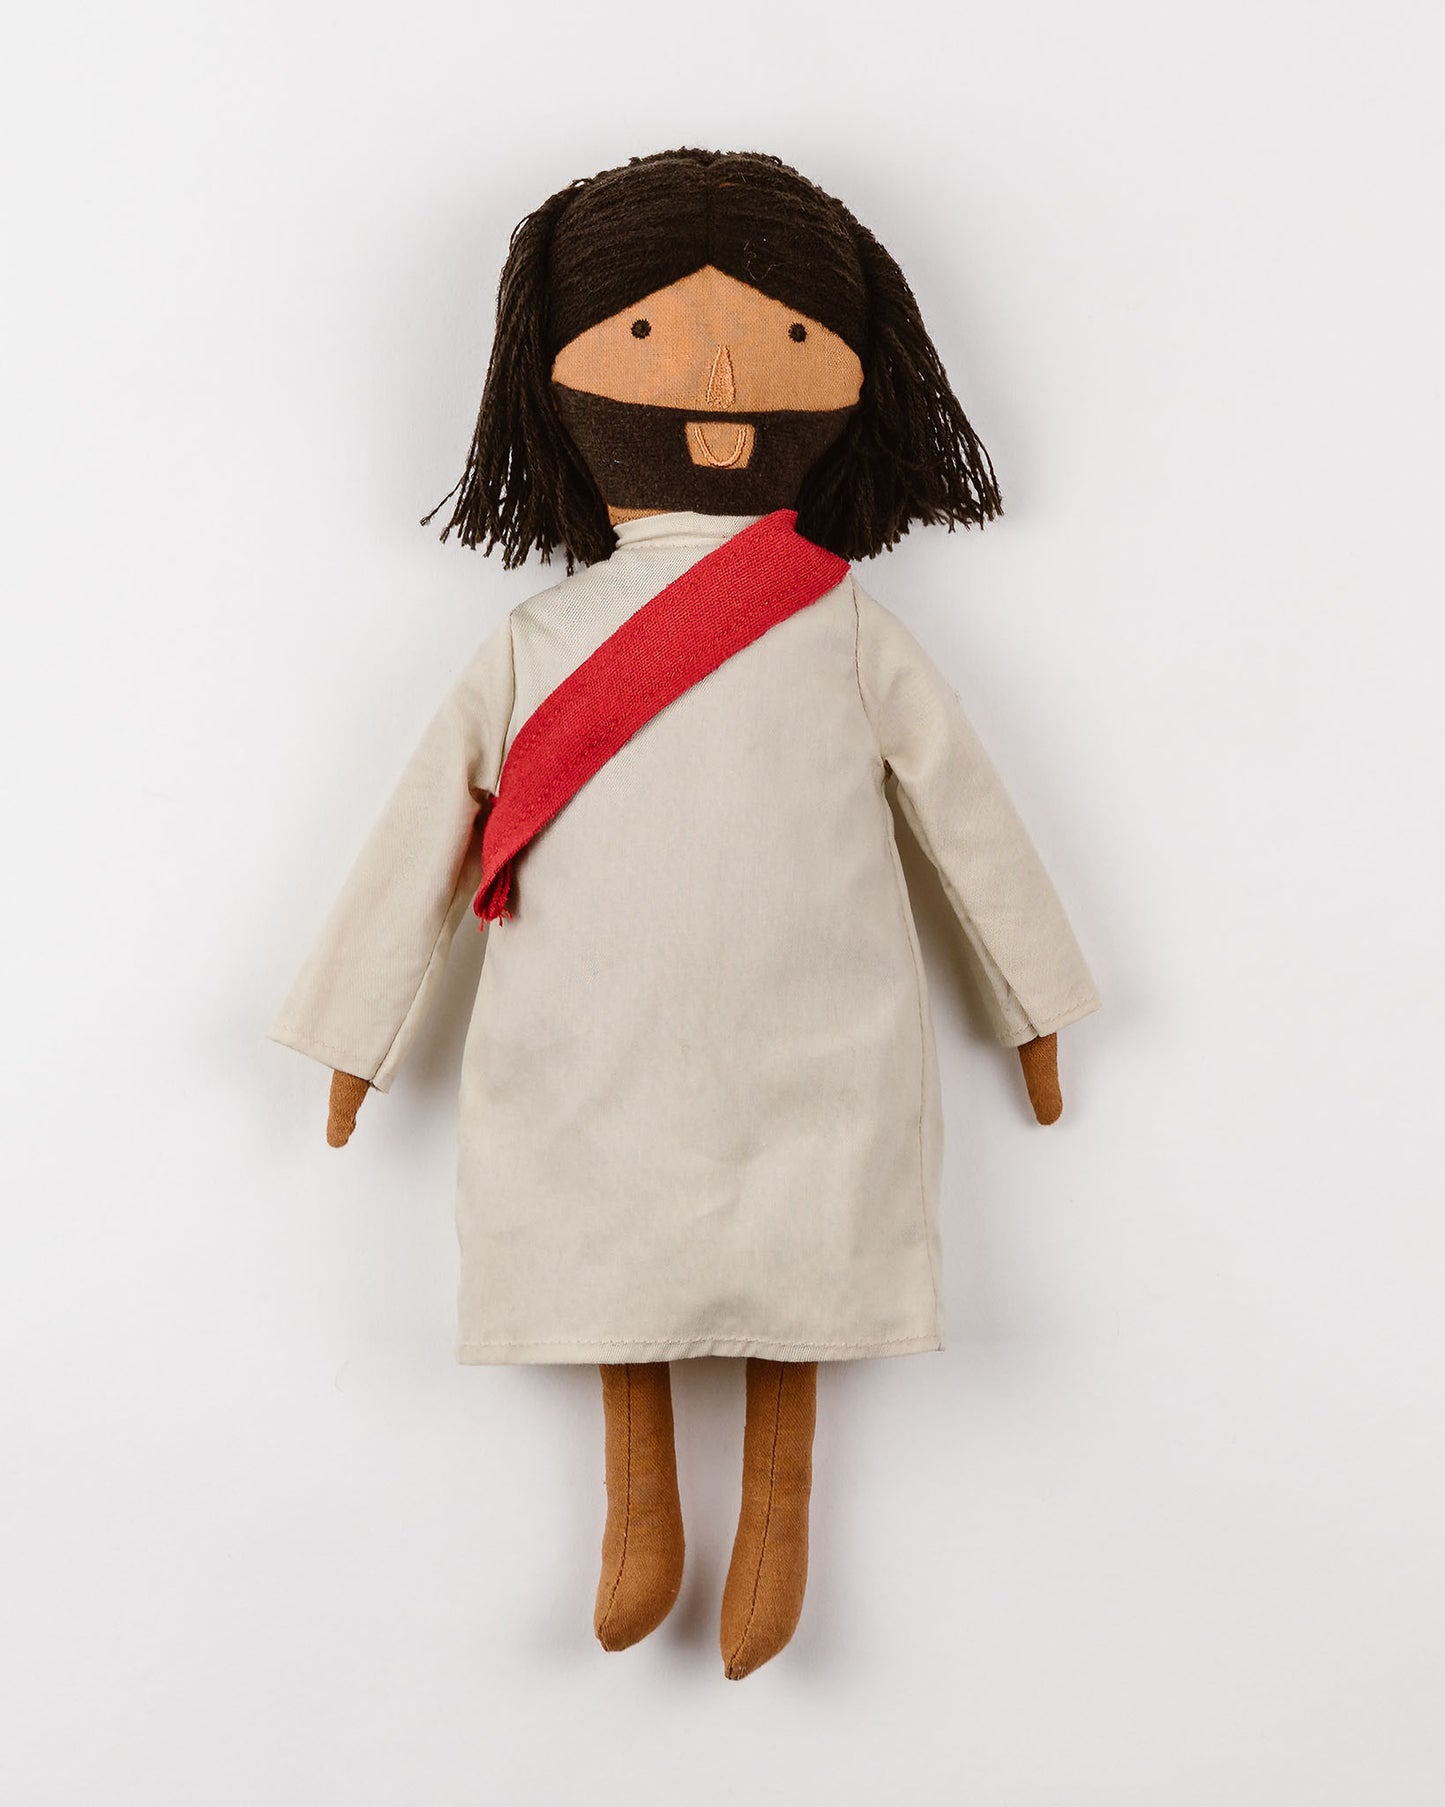 alt="Jesus of Nazareth Doll"